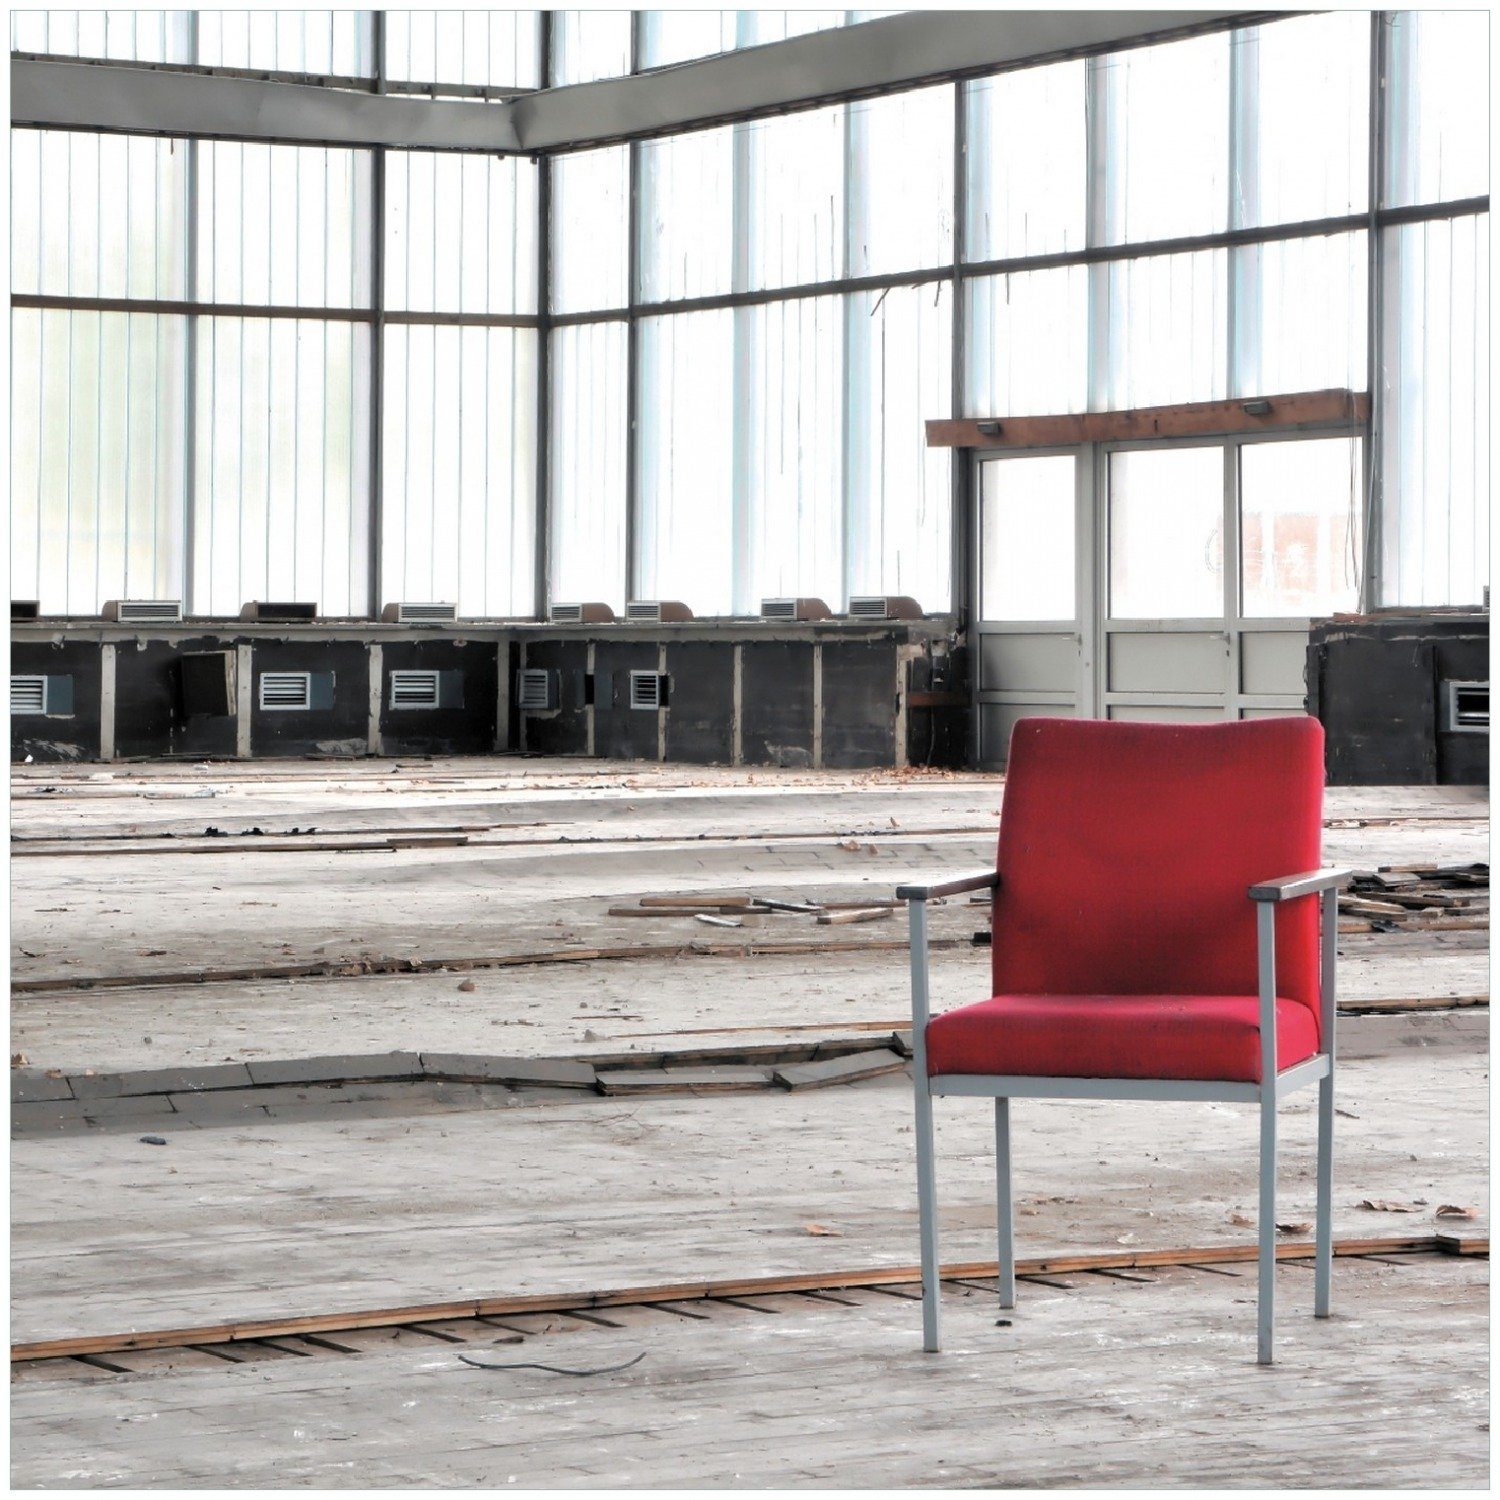 Wallario Memoboard Stille und Leere - ein einsamer roter Stuhl in einer alten Halle